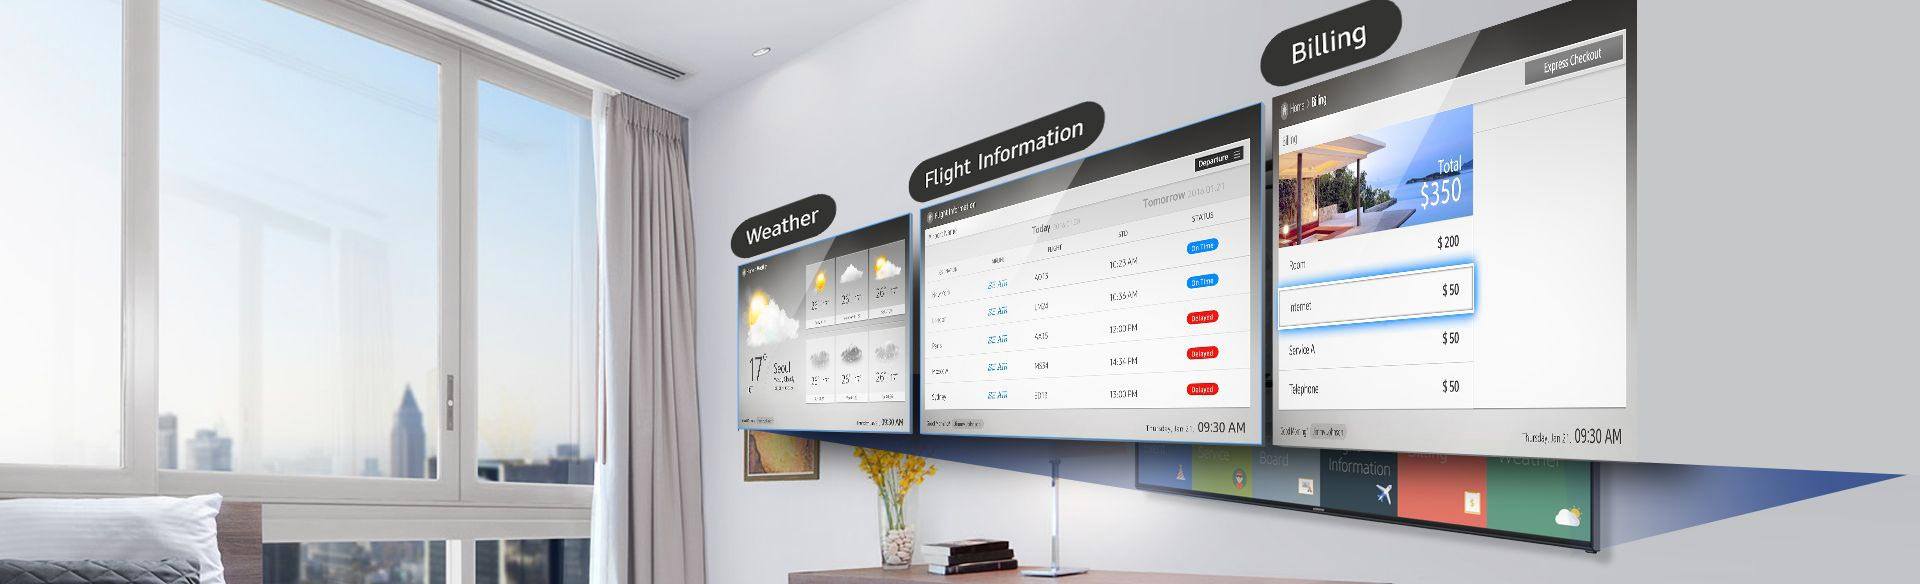 SAMSUNG HOSPITALITY LED TV ทีวีสำหรับงานระบบ 40นิ้ว 4